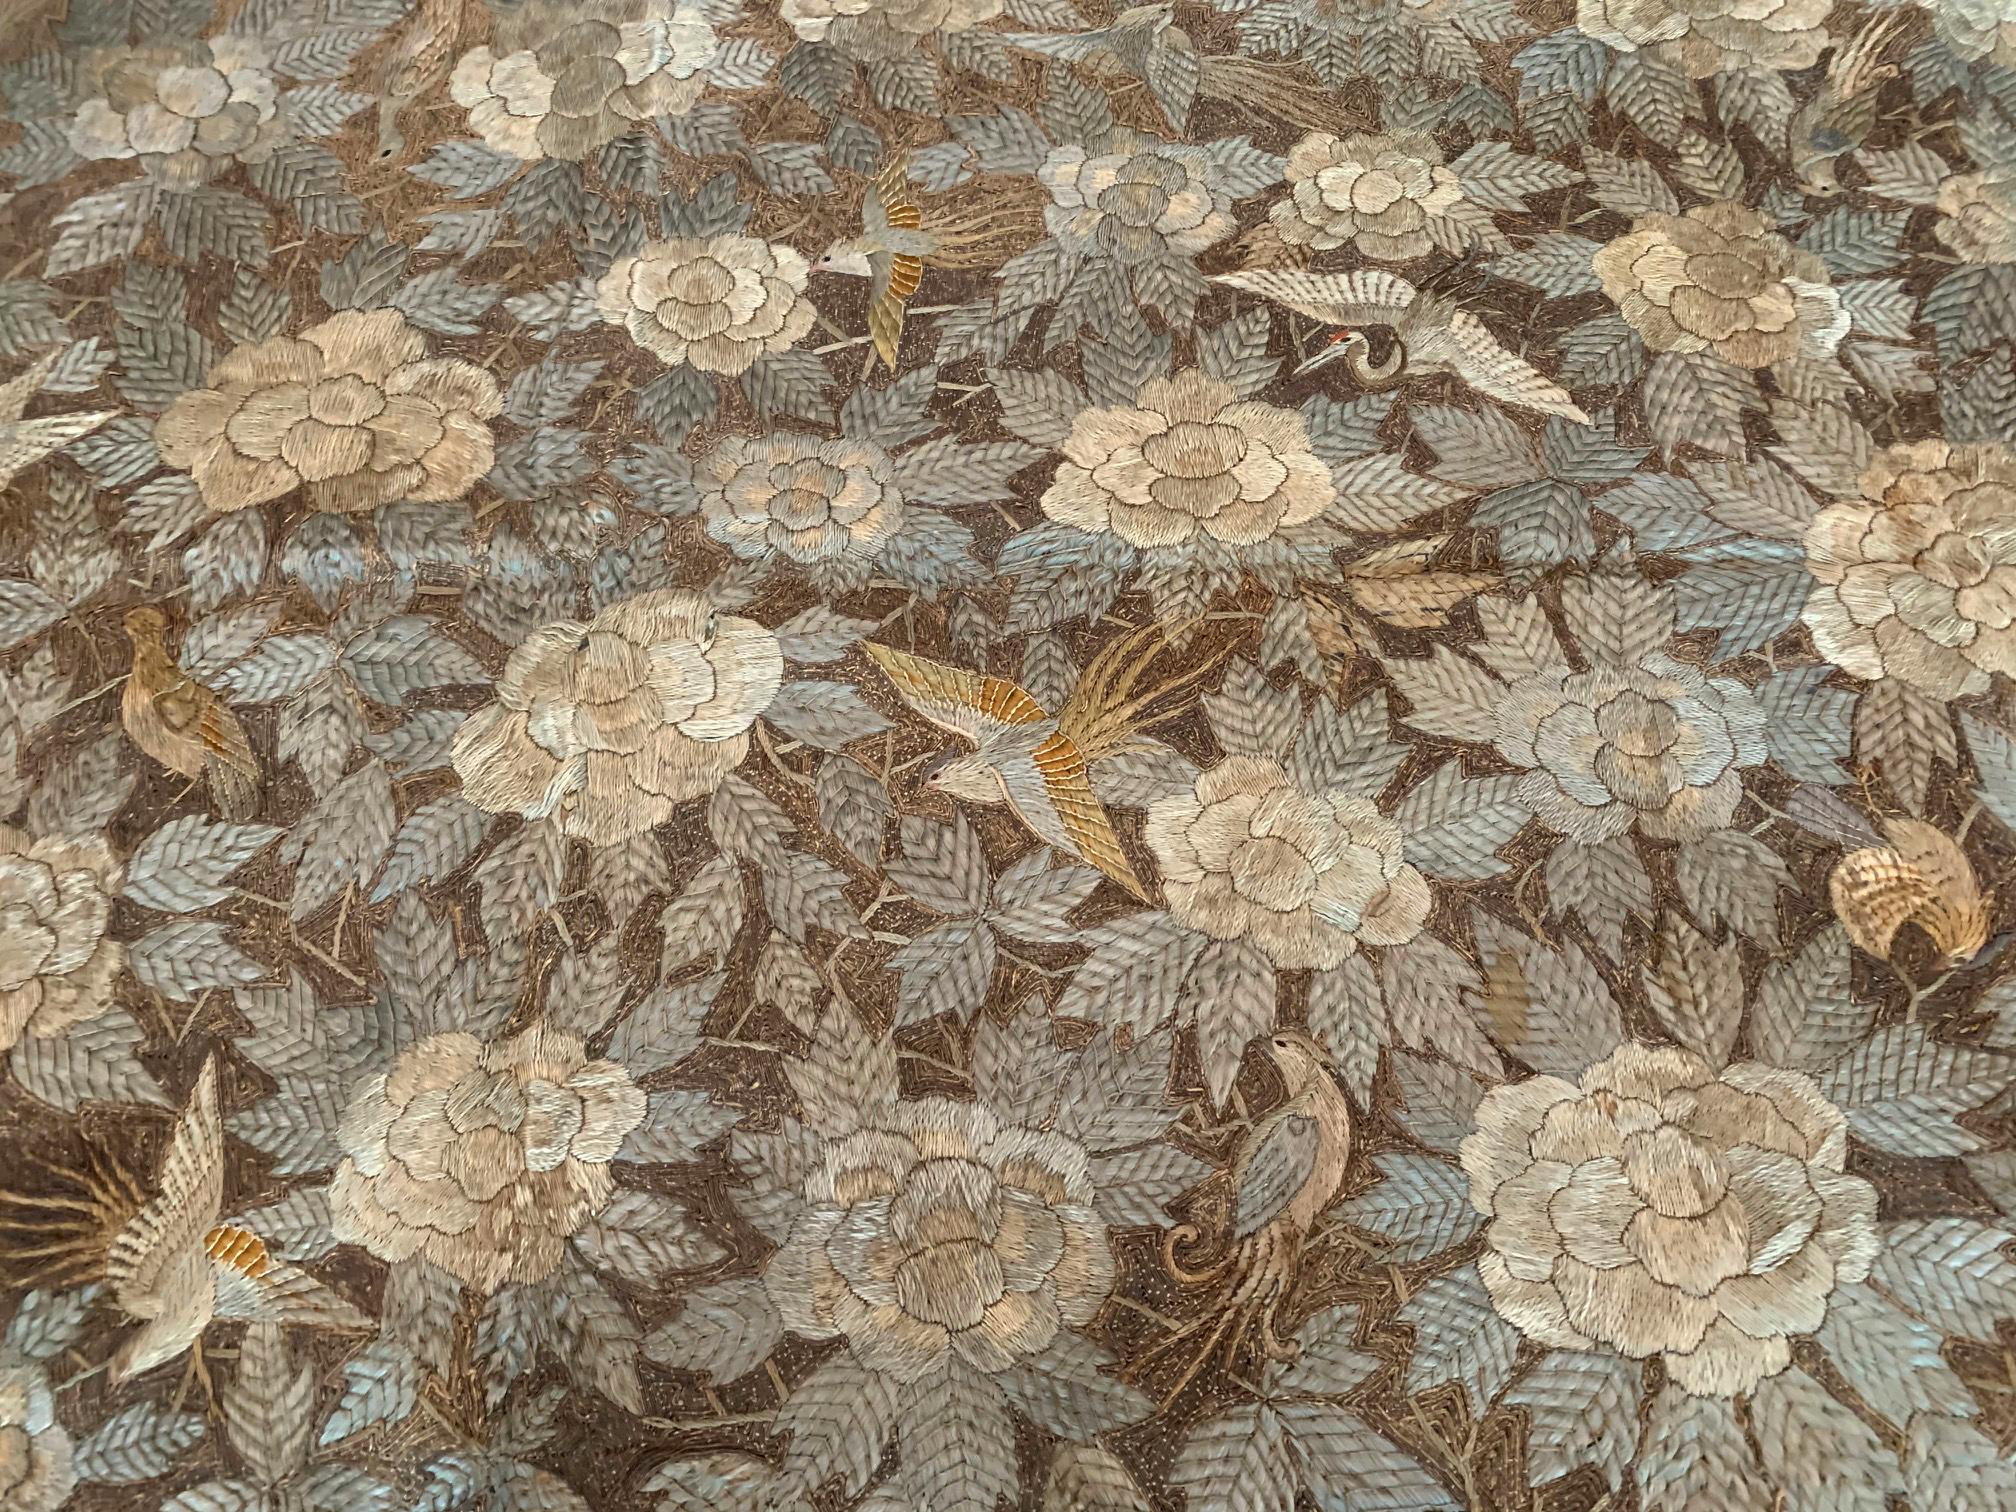 Großer japanischer Seidenstickerei-Wandteppich, ca. 19. Jahrhundert, späte Edo- bis frühe Meiji-Zeit. Sorgfältige Handarbeit, die dicht wiederholte Motive von Vögeln im Flug zwischen üppigen Pfingstrosenblüten in der zentralen Tafel darstellt, die